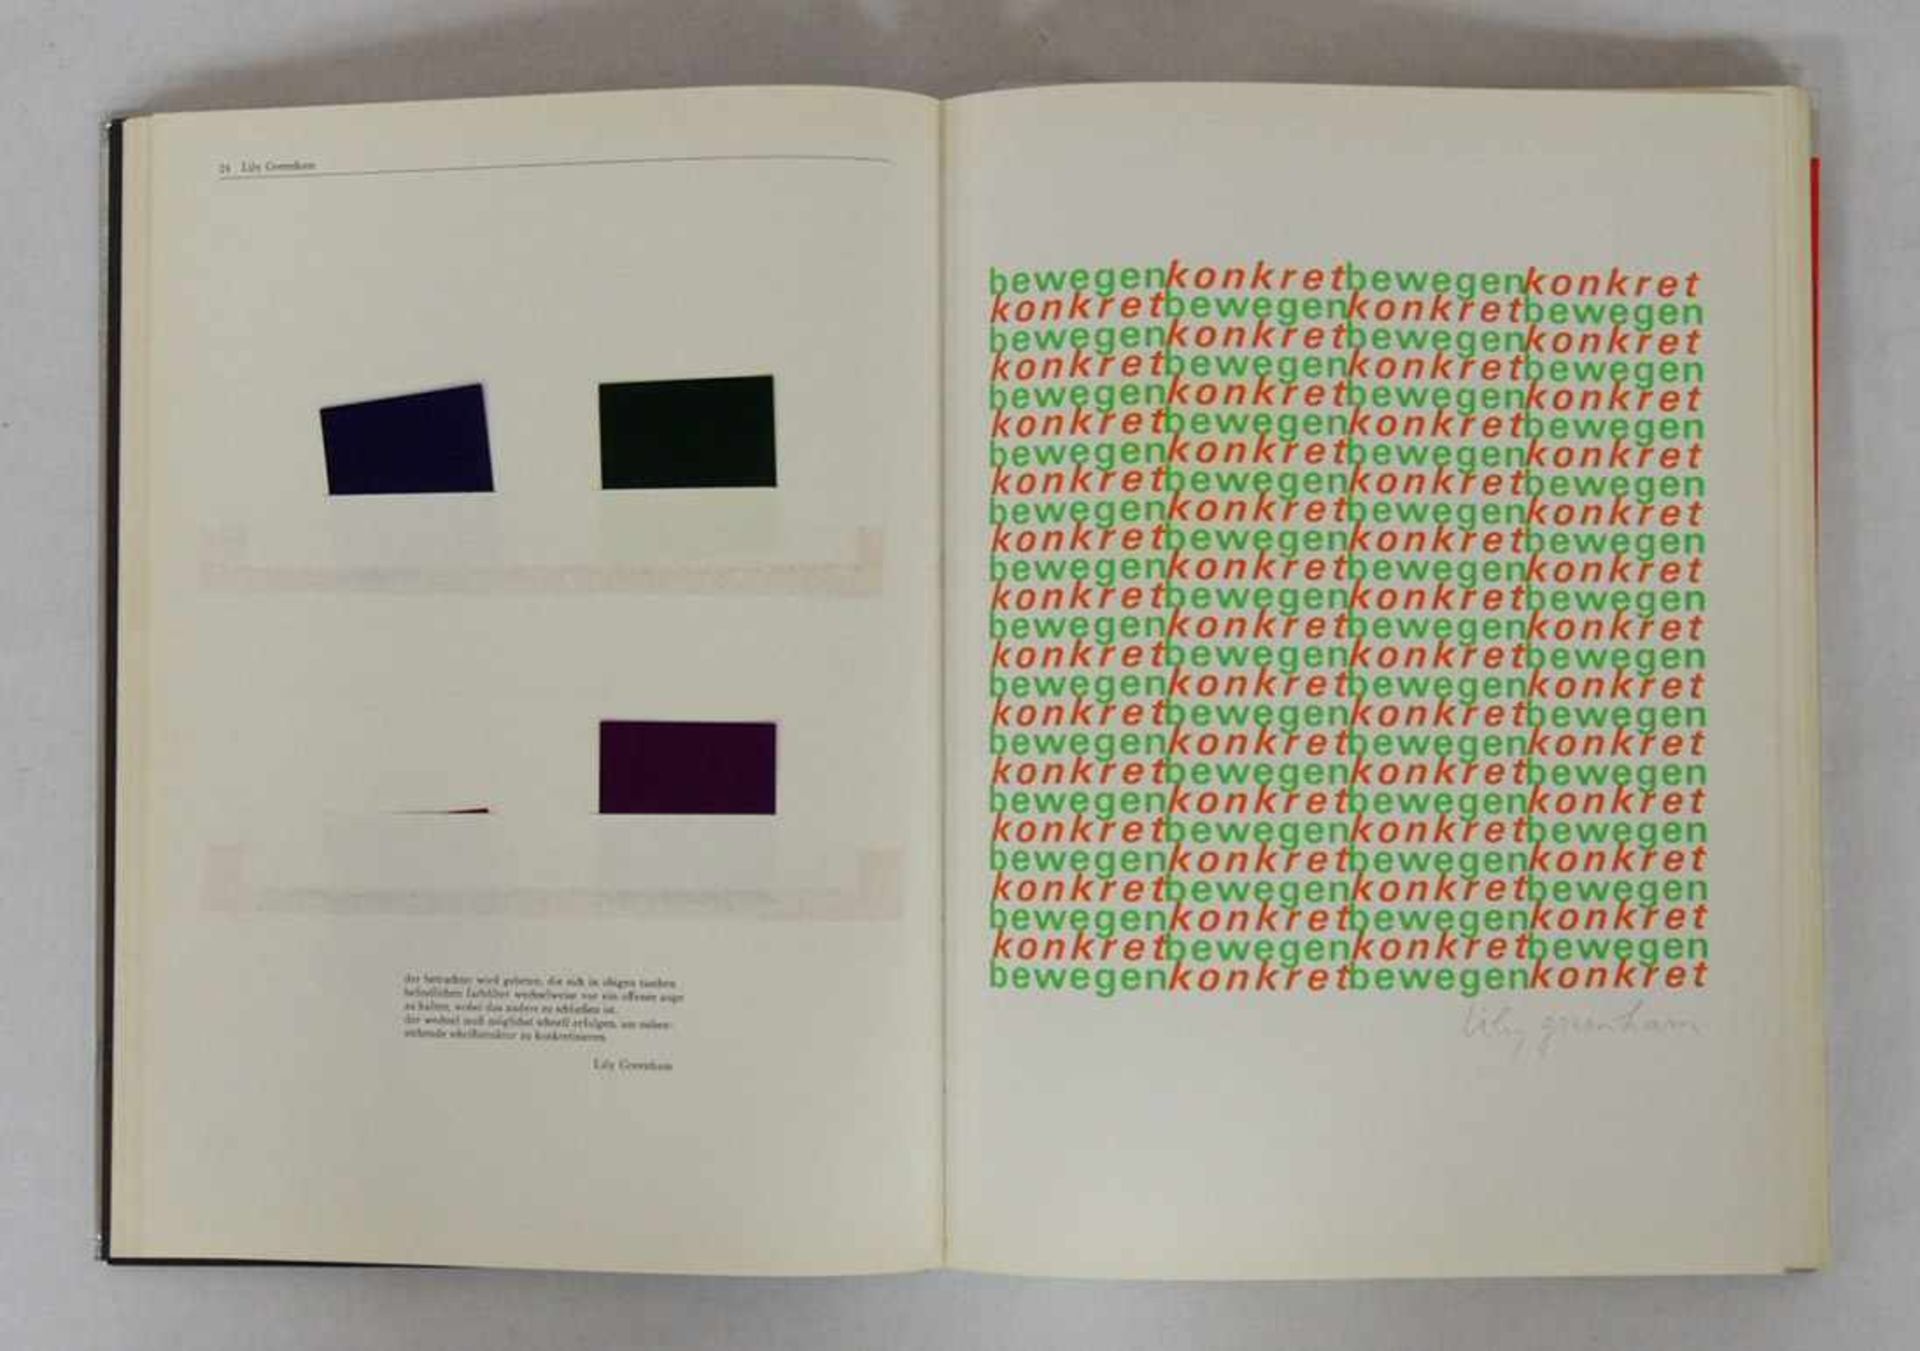 BRENNER, JürgenFühr 4 für vier6 Farbserigraphien, Stuttgart 1969, Ex 57/80 - Bild 2 aus 2